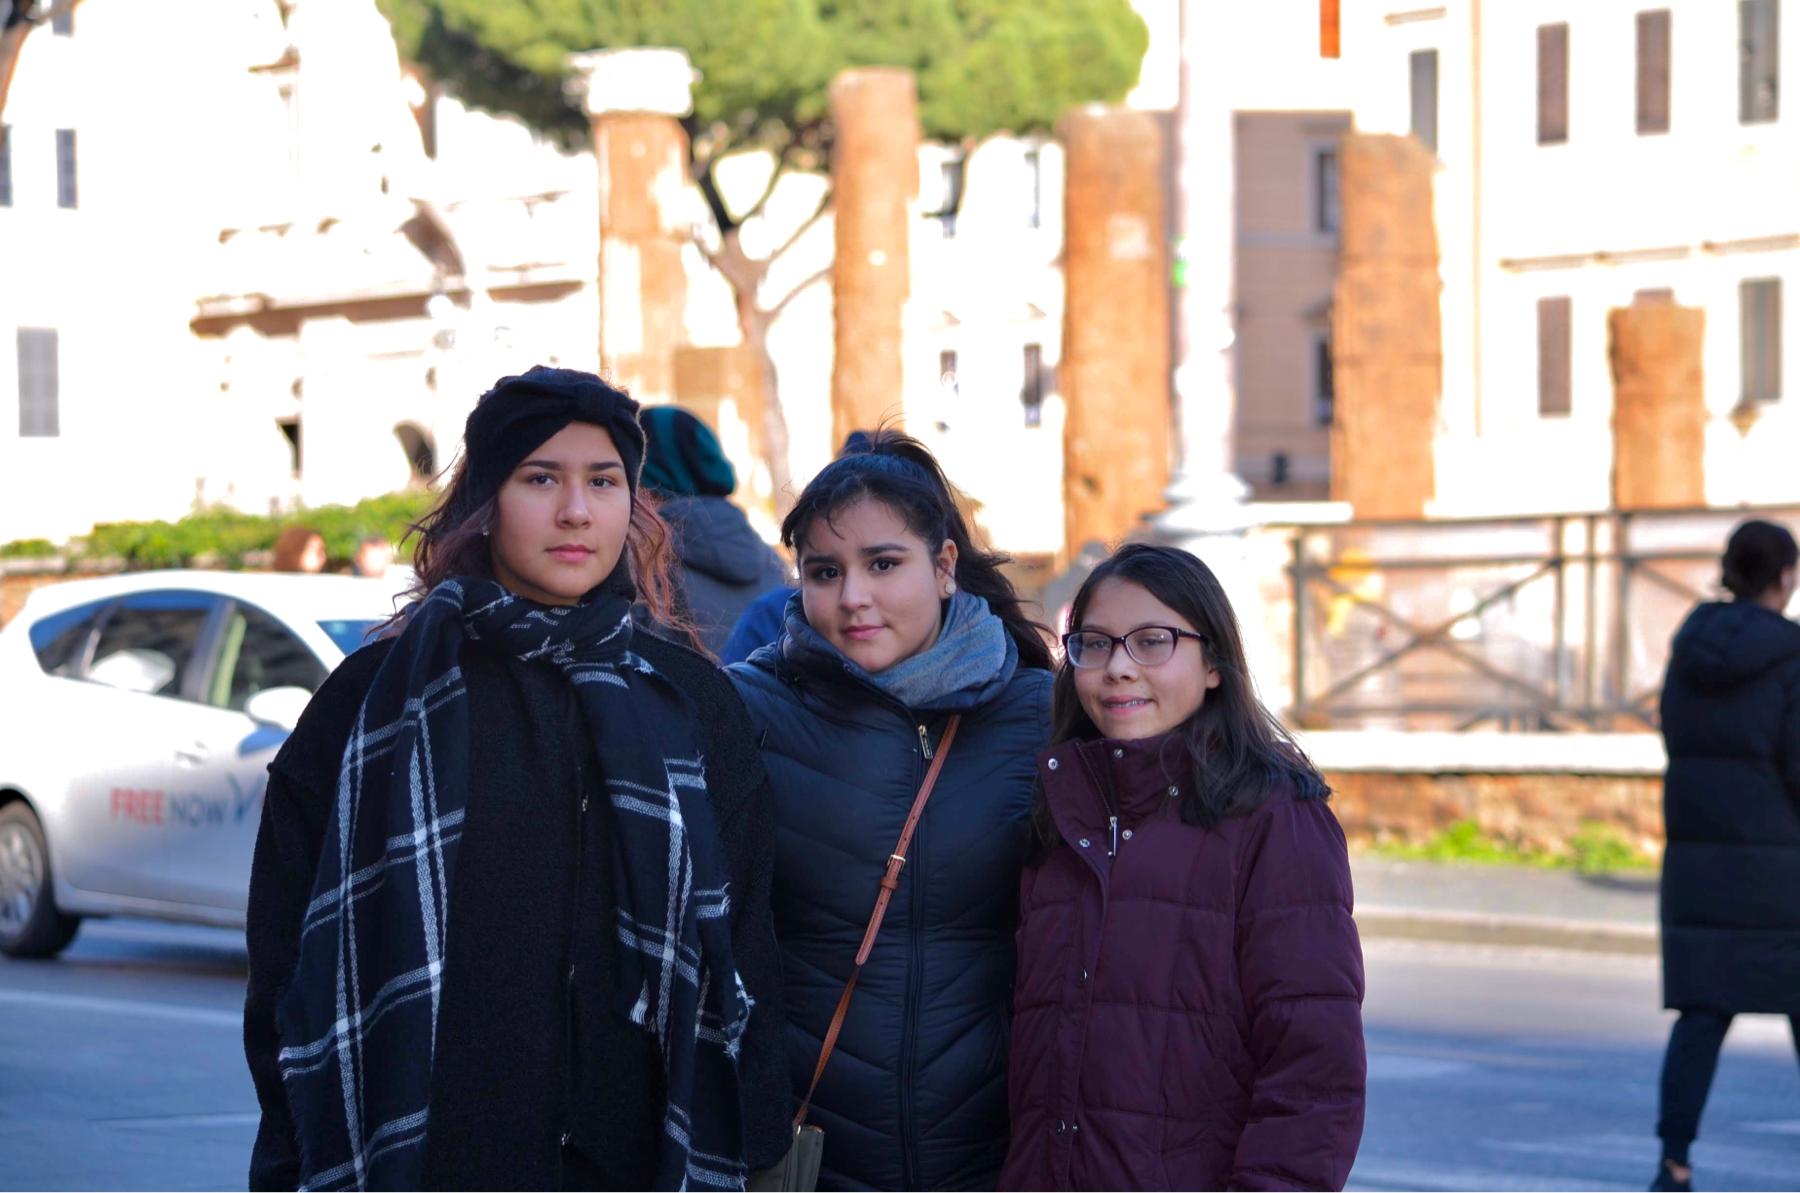 Nuestras bellezas caminando por las calles de Roma